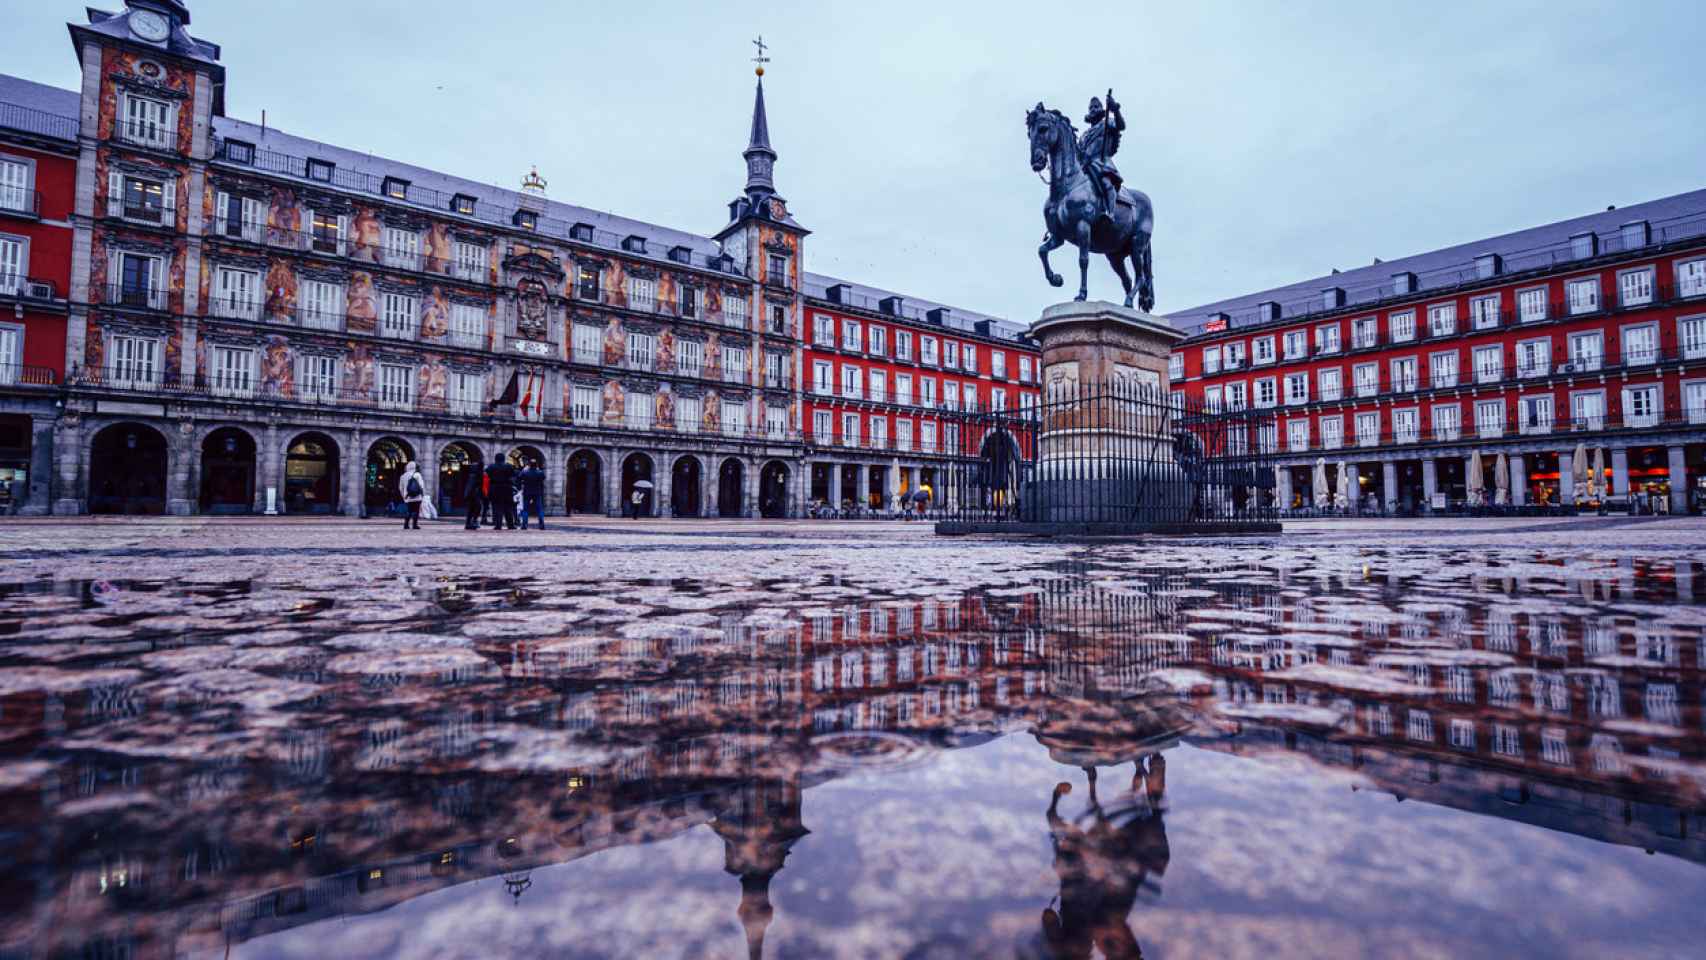 Imagen de la Plaza Mayor de Madrid tras haber llovido